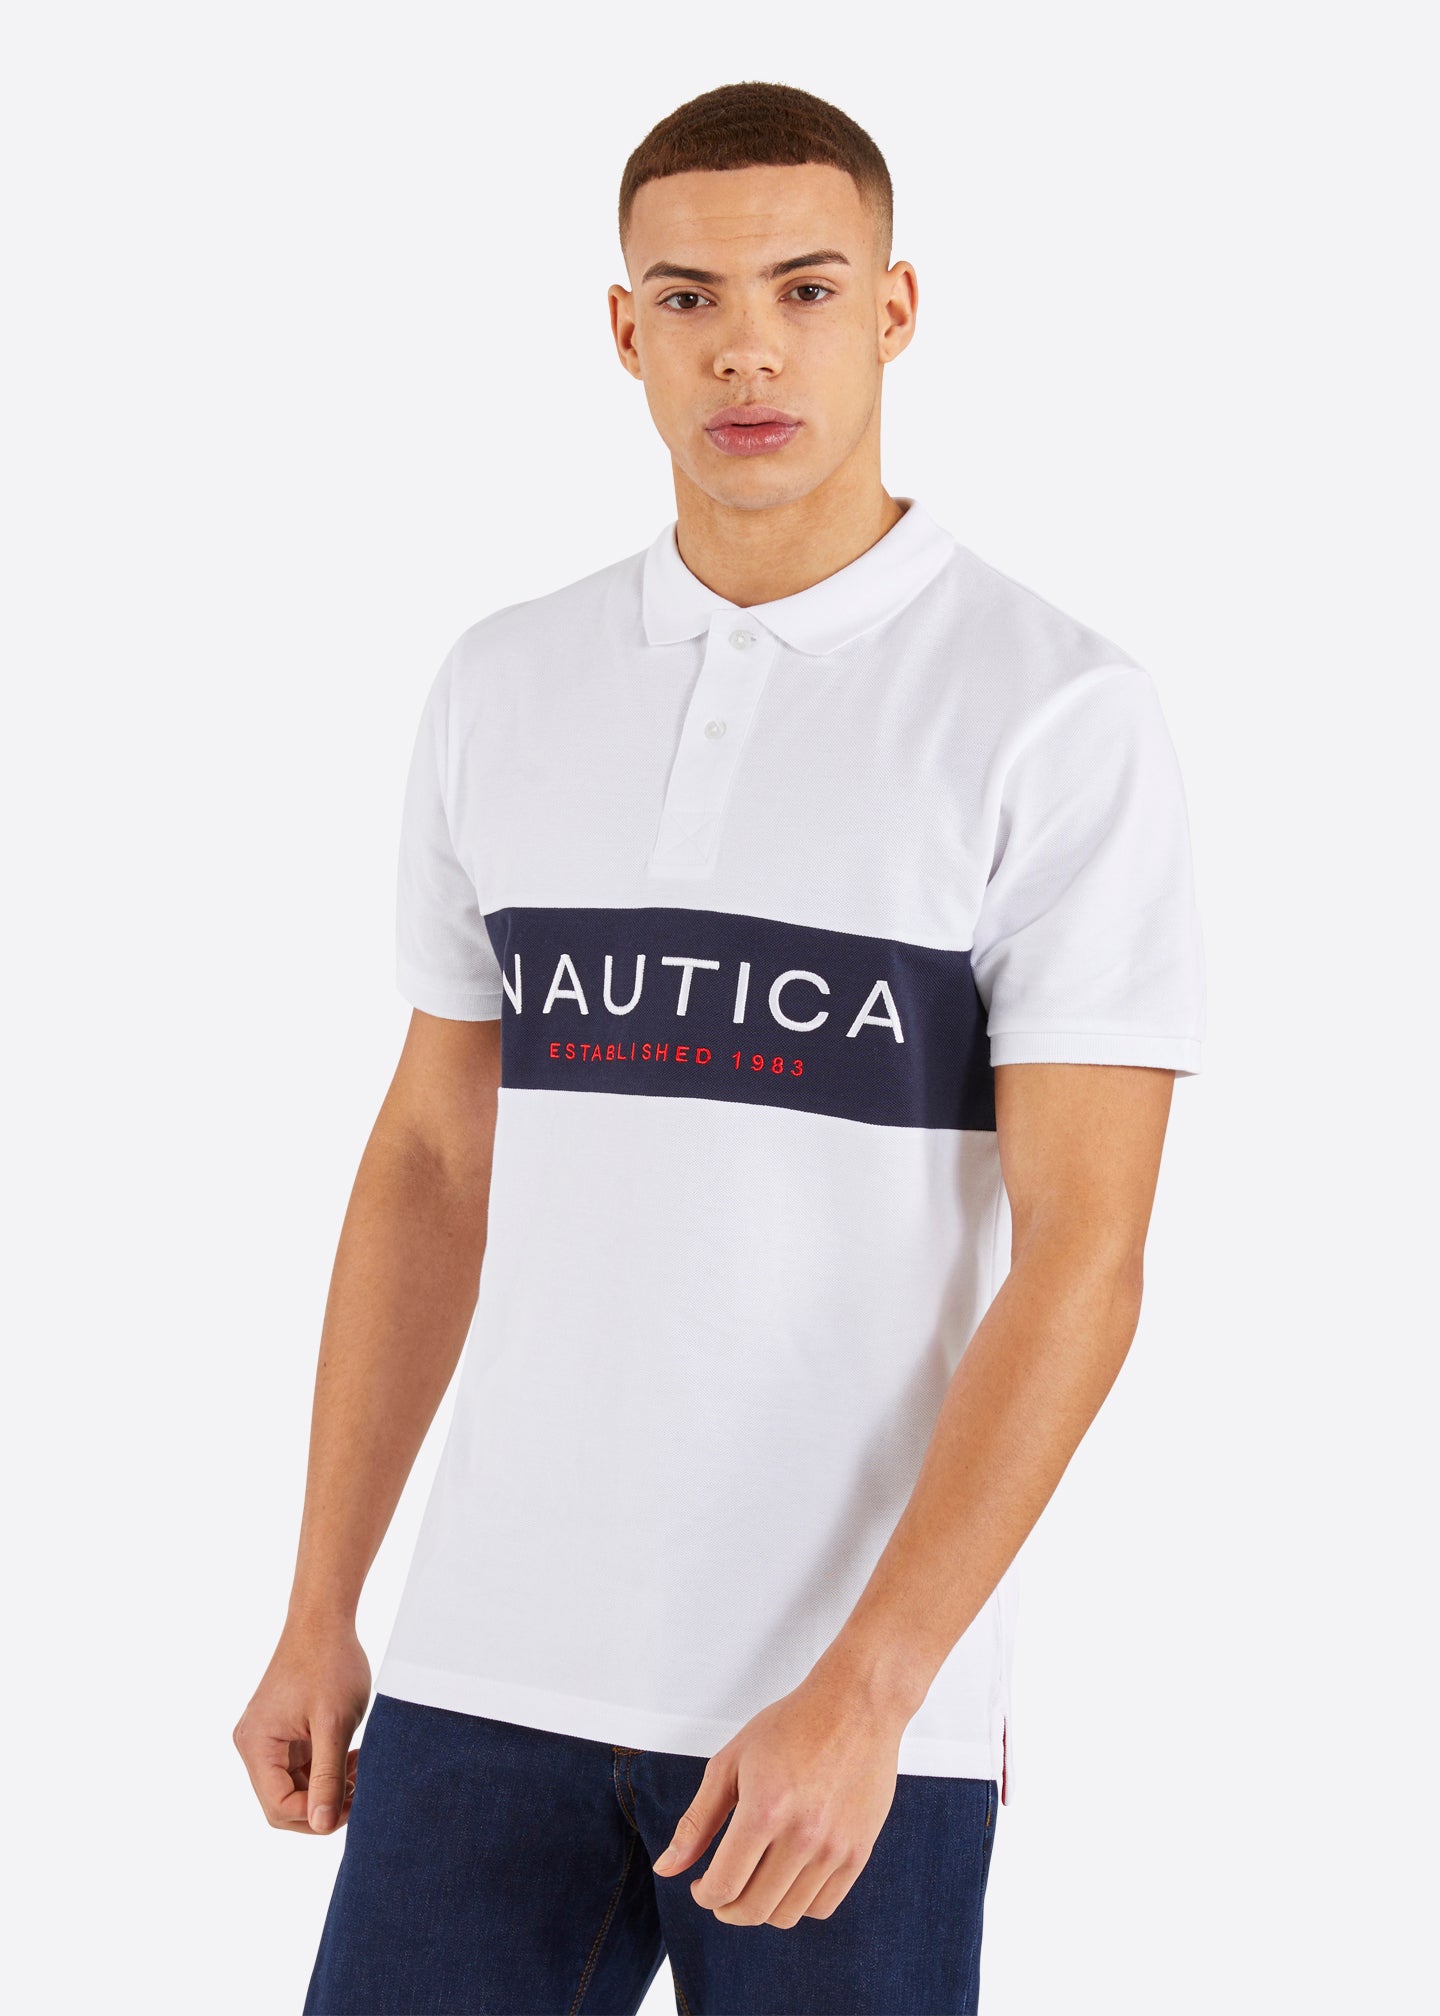 Nautica Gideon Polo Shirt - White - Front